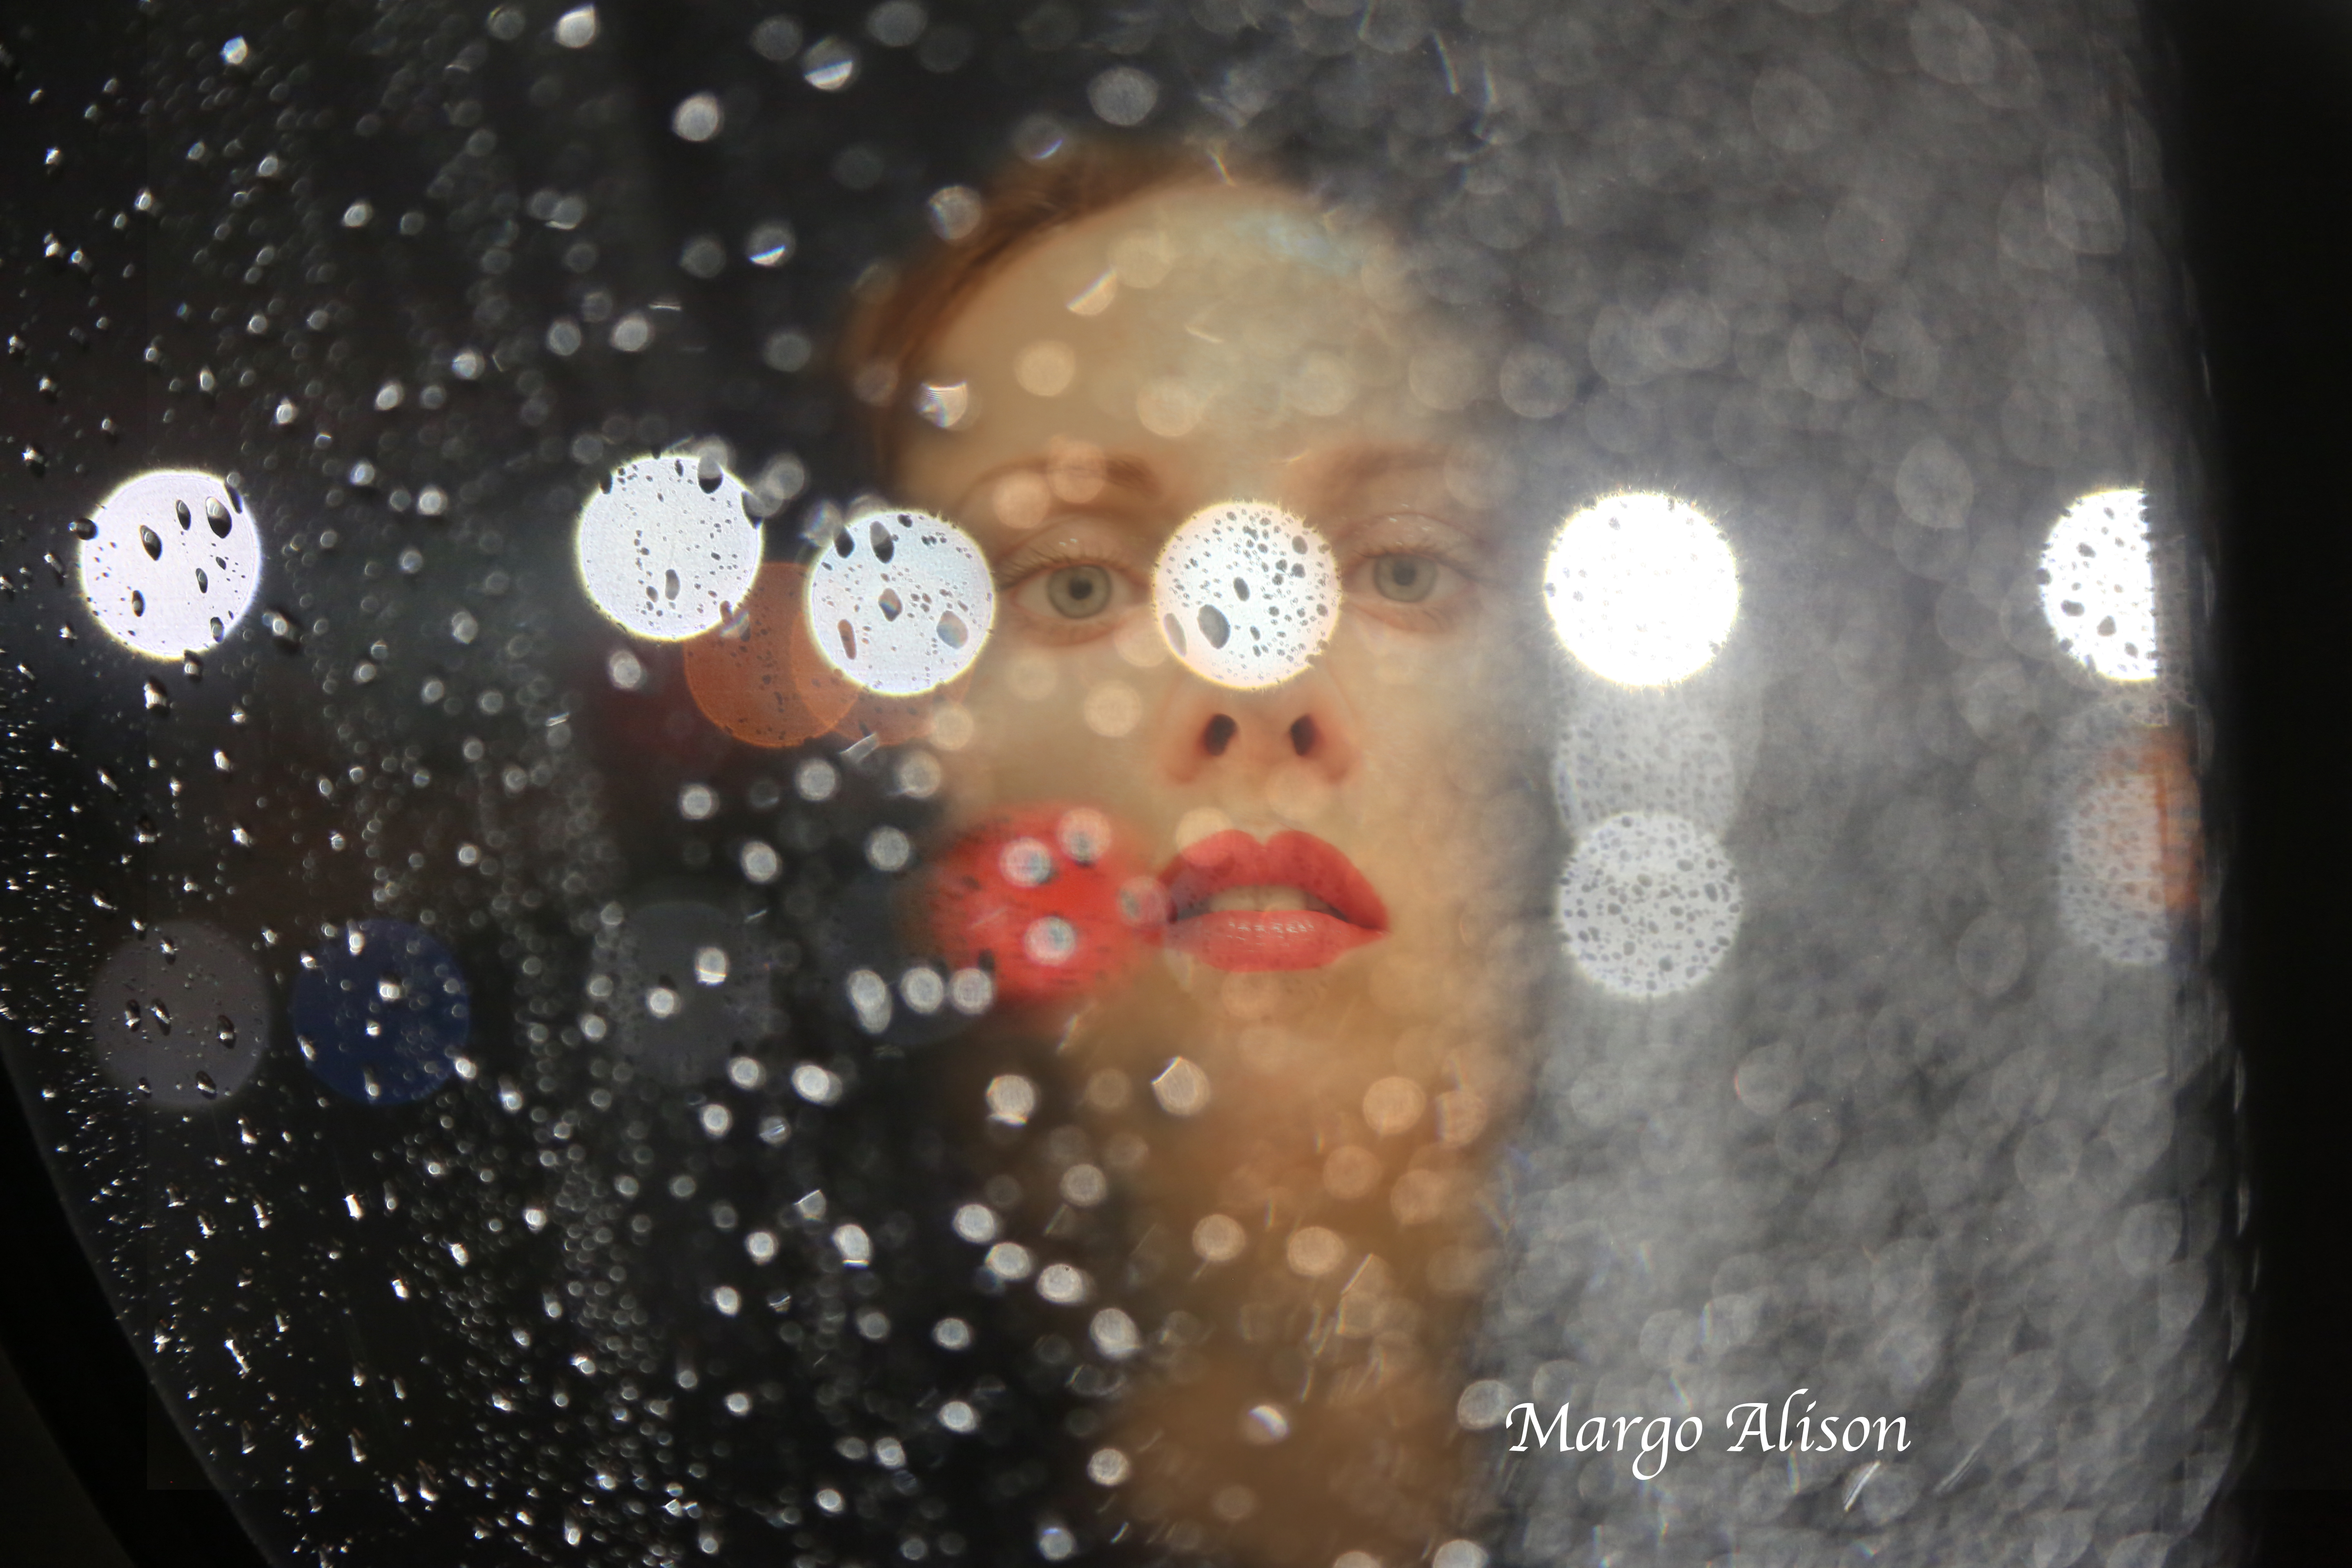 Margo Alison